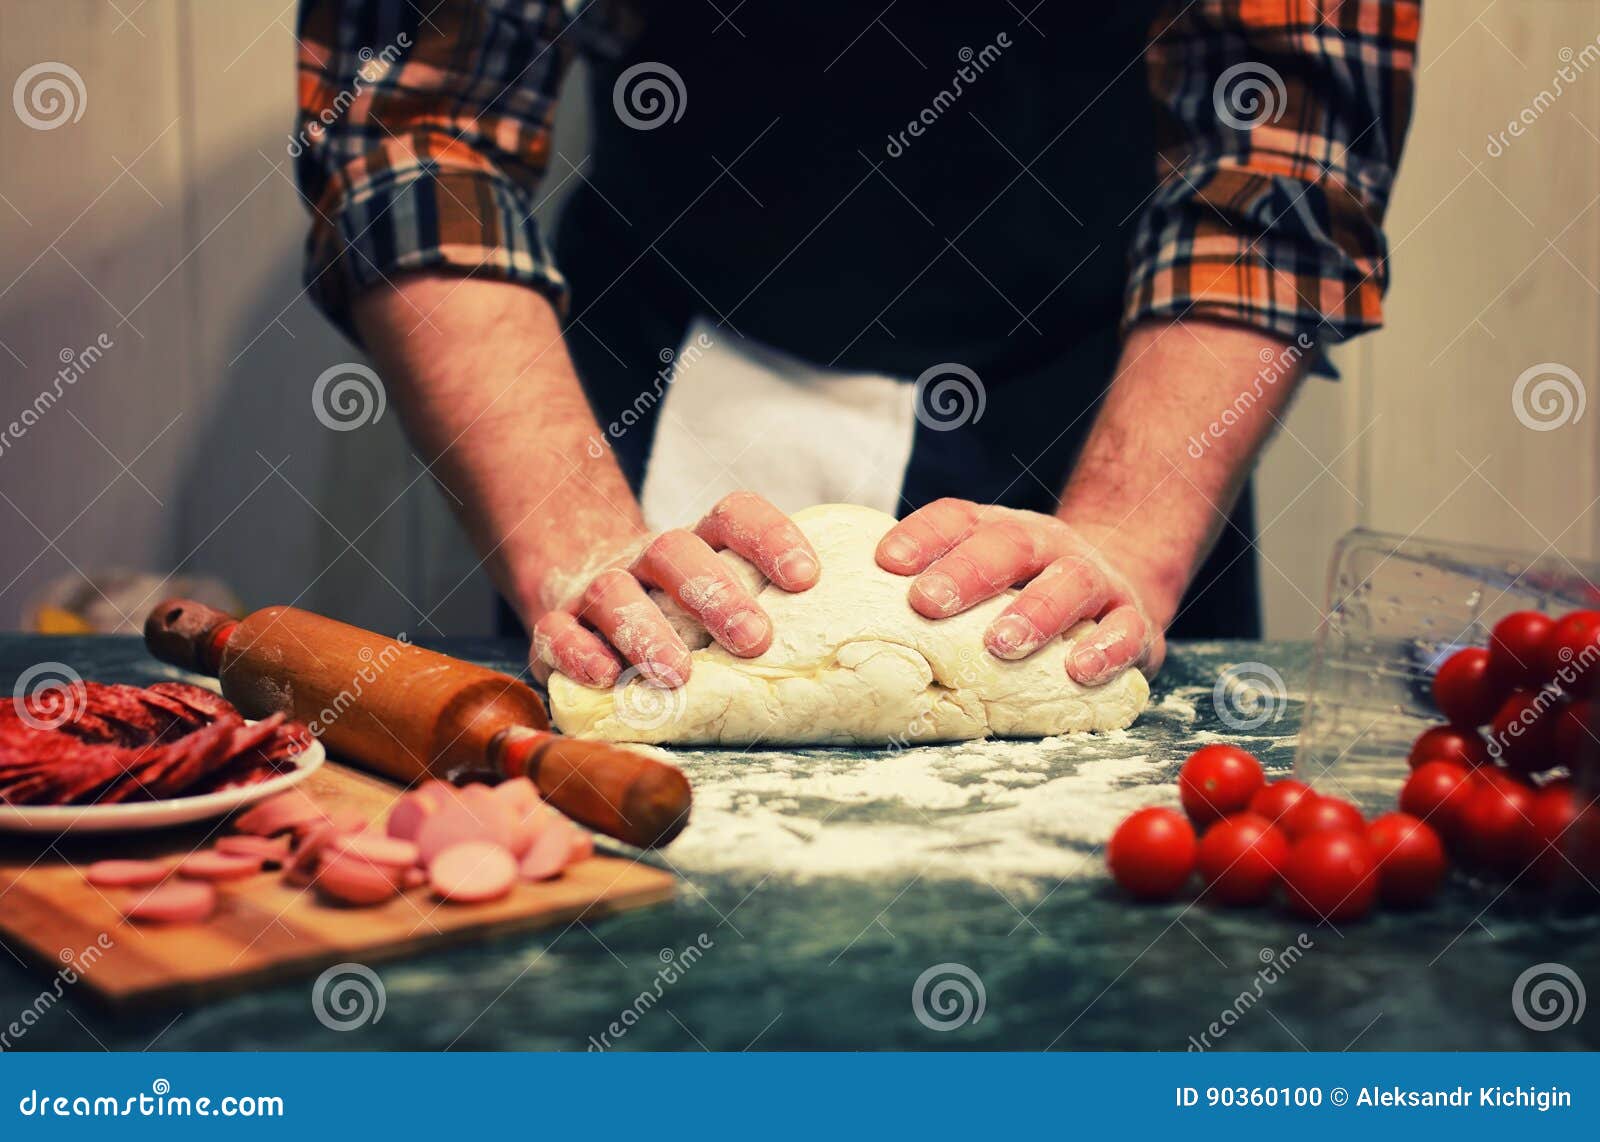 человек который делает тесто для пиццы фото 93